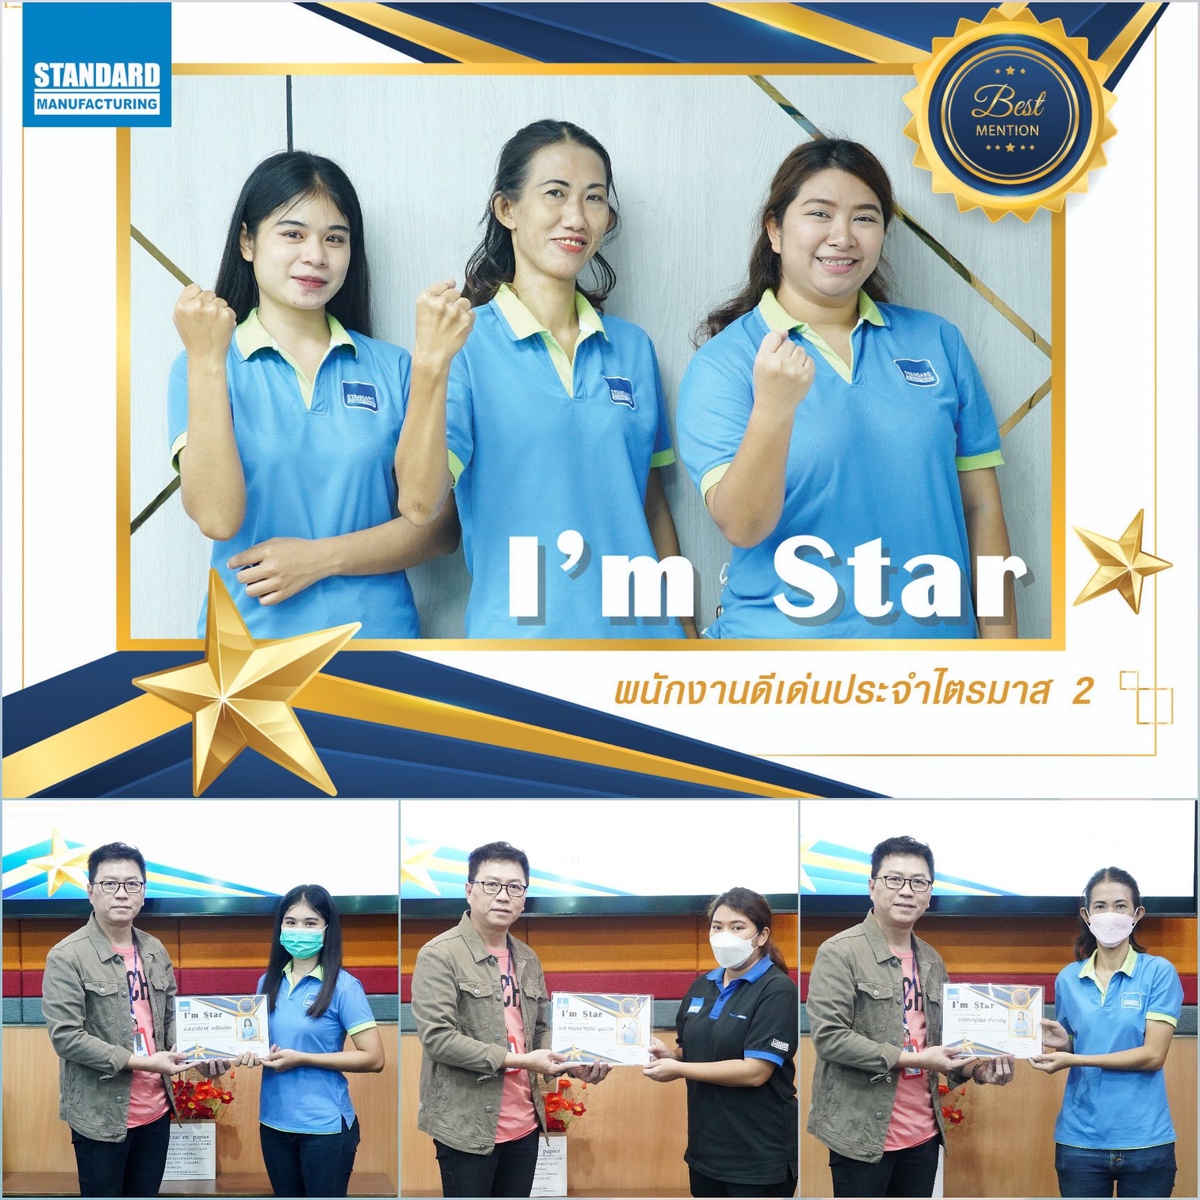 ผู้บริหาร บริษัท สแตนดาร์ด แมนูแฟคเจอริ่ง จำกัด มอบรางวัล I' m Star พนักงานดีเด่น ประจำไตรมาส 2